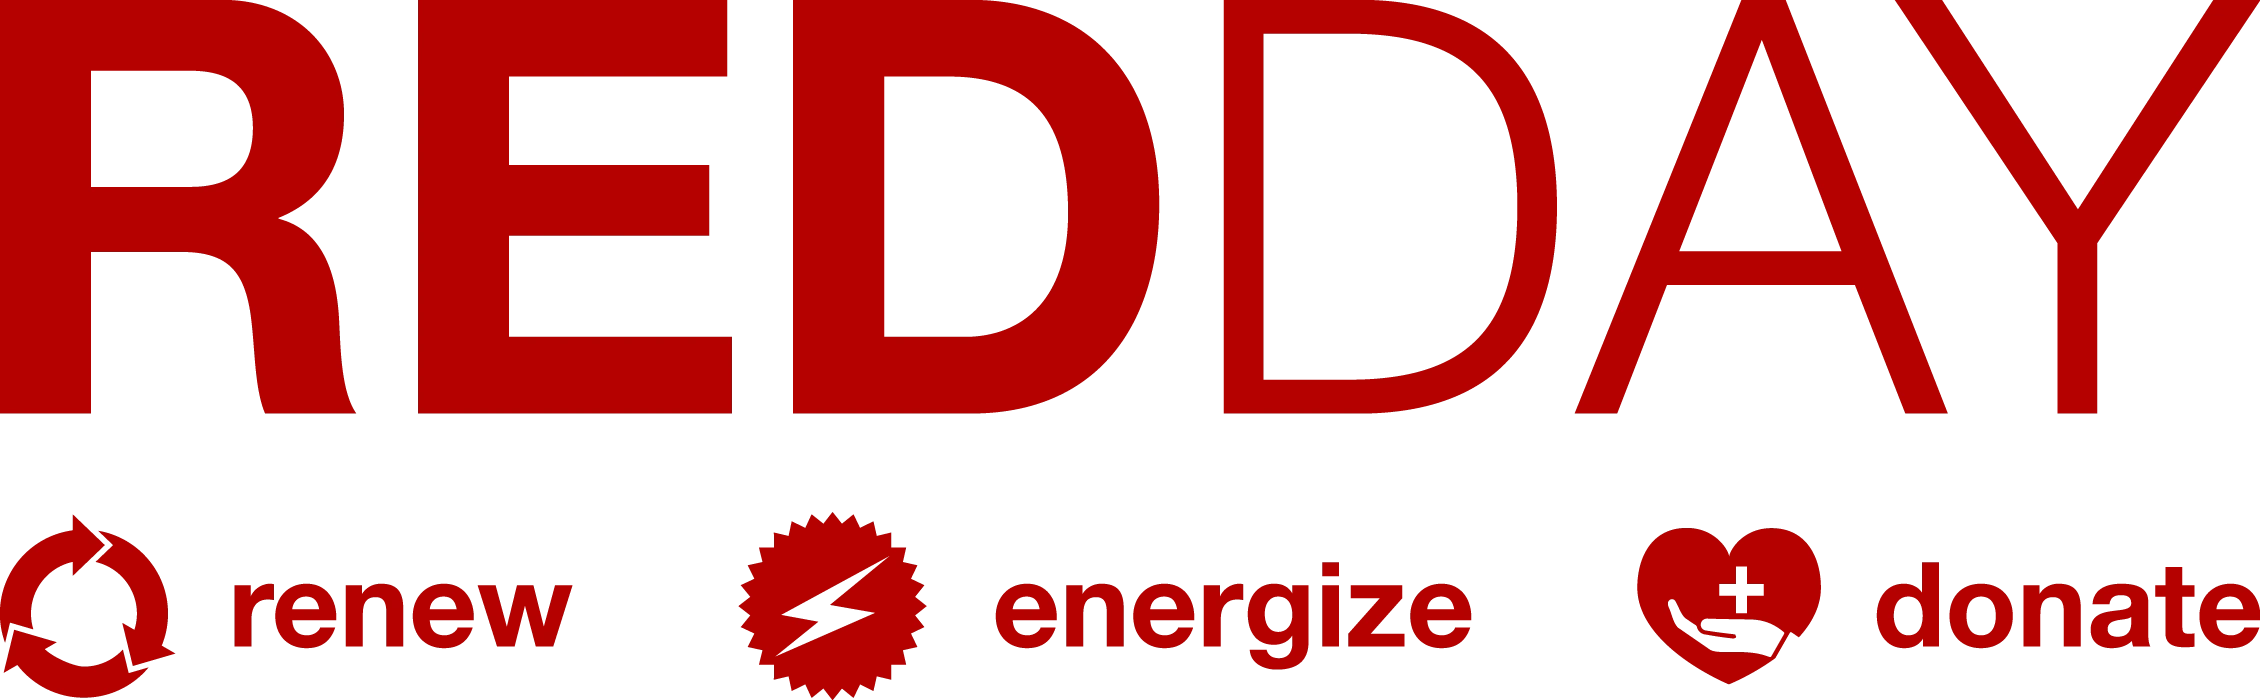 red day logo